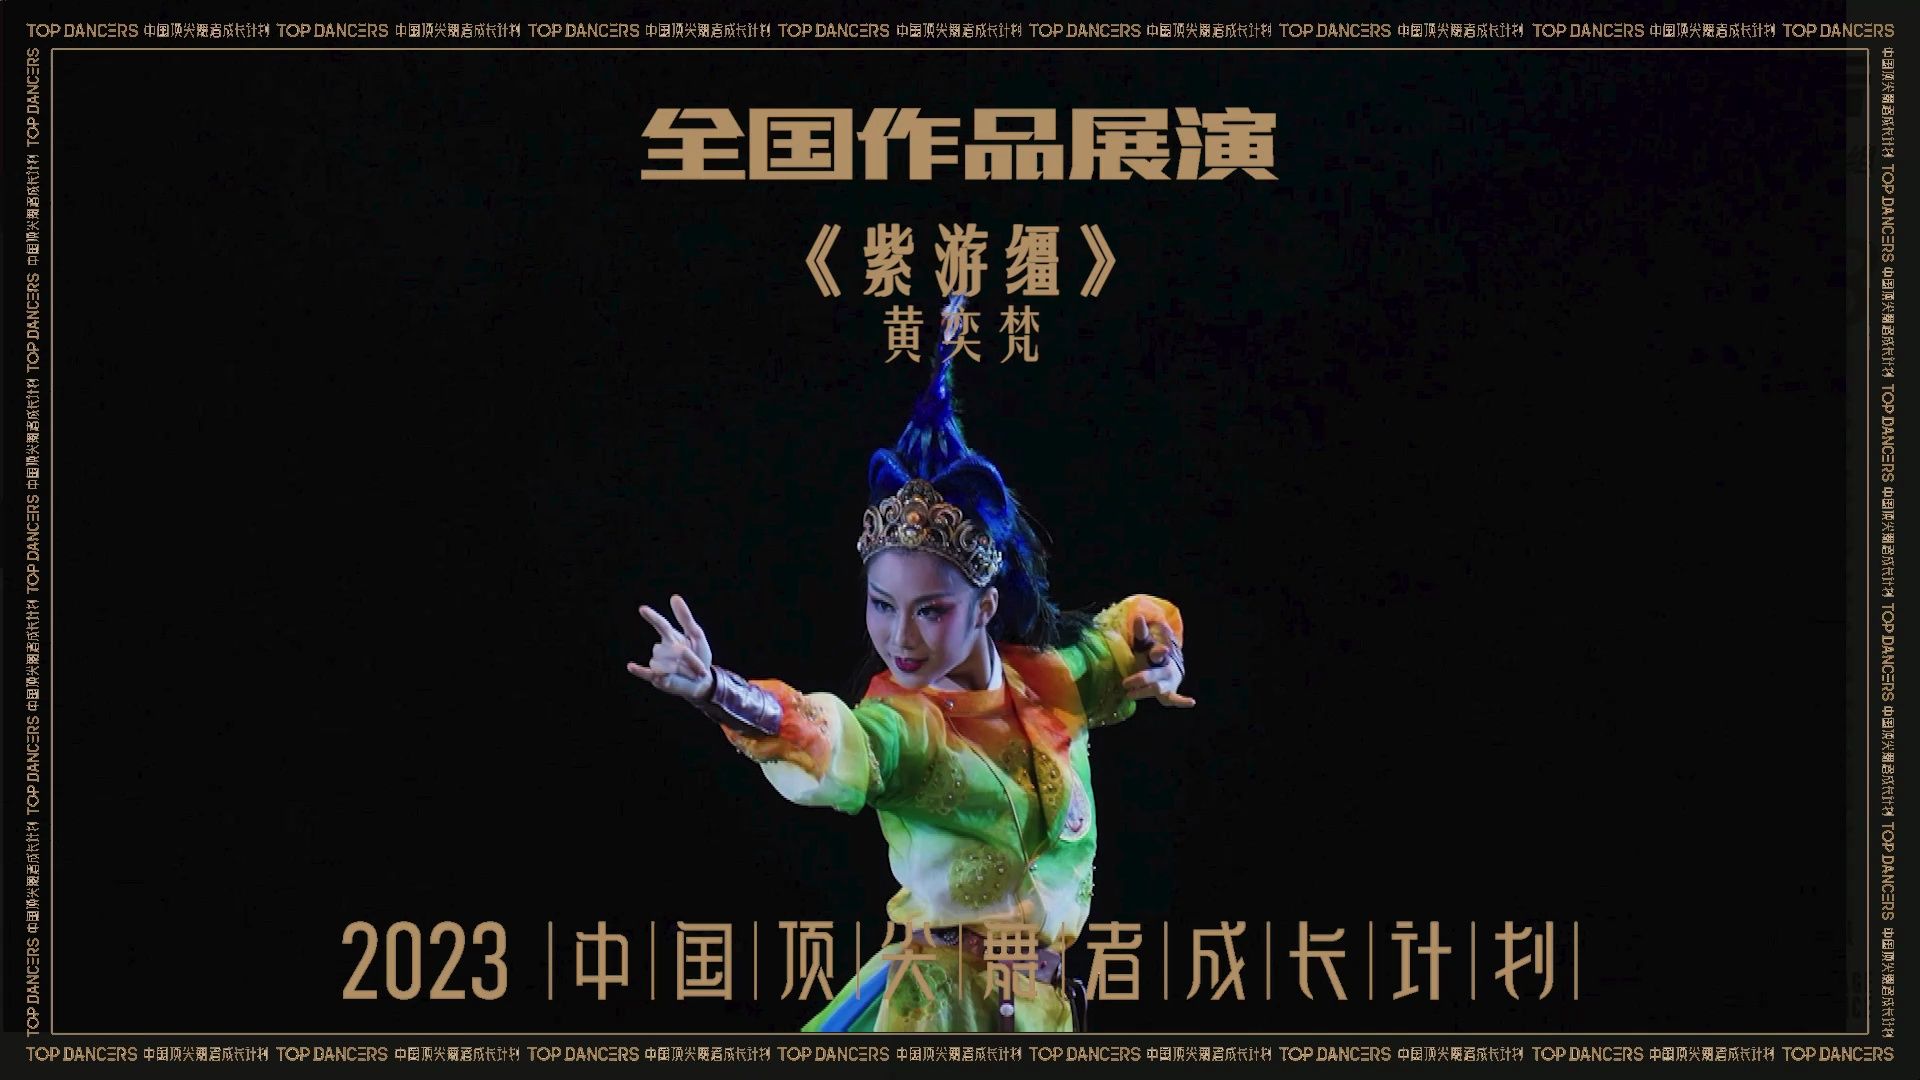 【2023中国顶尖舞者全国作品展演】黄奕梵 中国舞   《紫游缰》